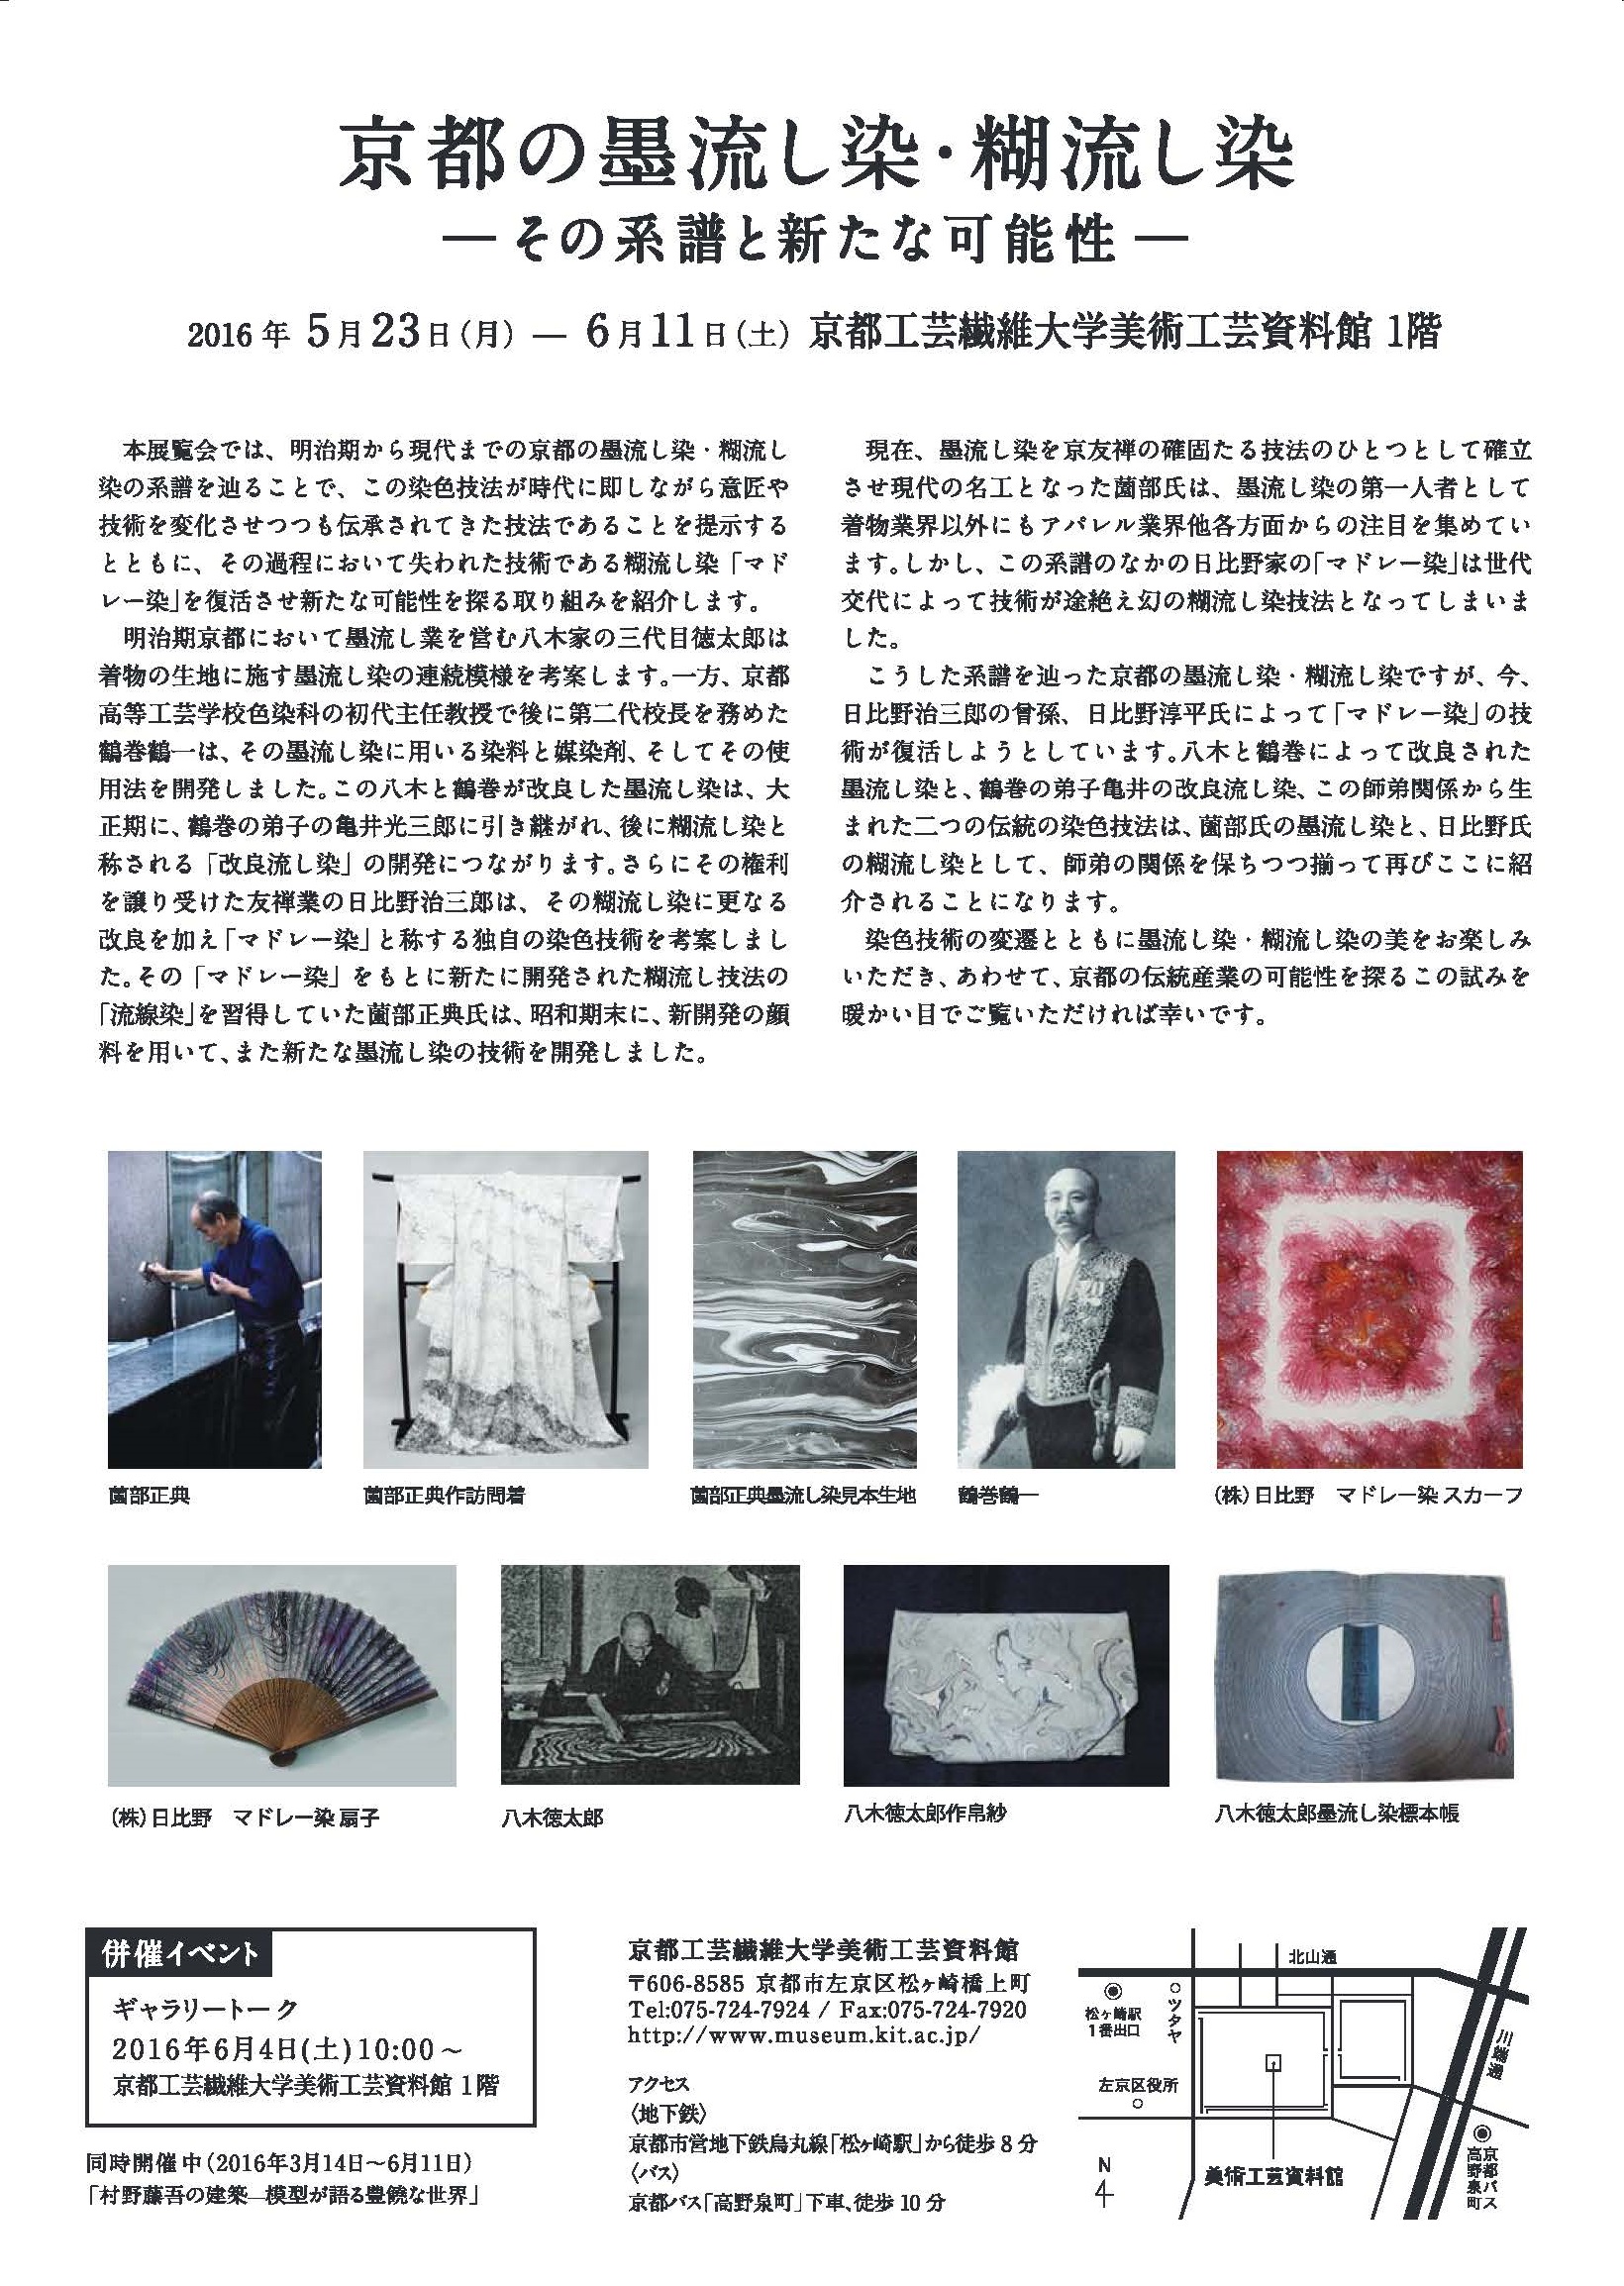 展覧会「京都の墨流し染・糊流し染－その系譜と新たな可能性－」を開催します